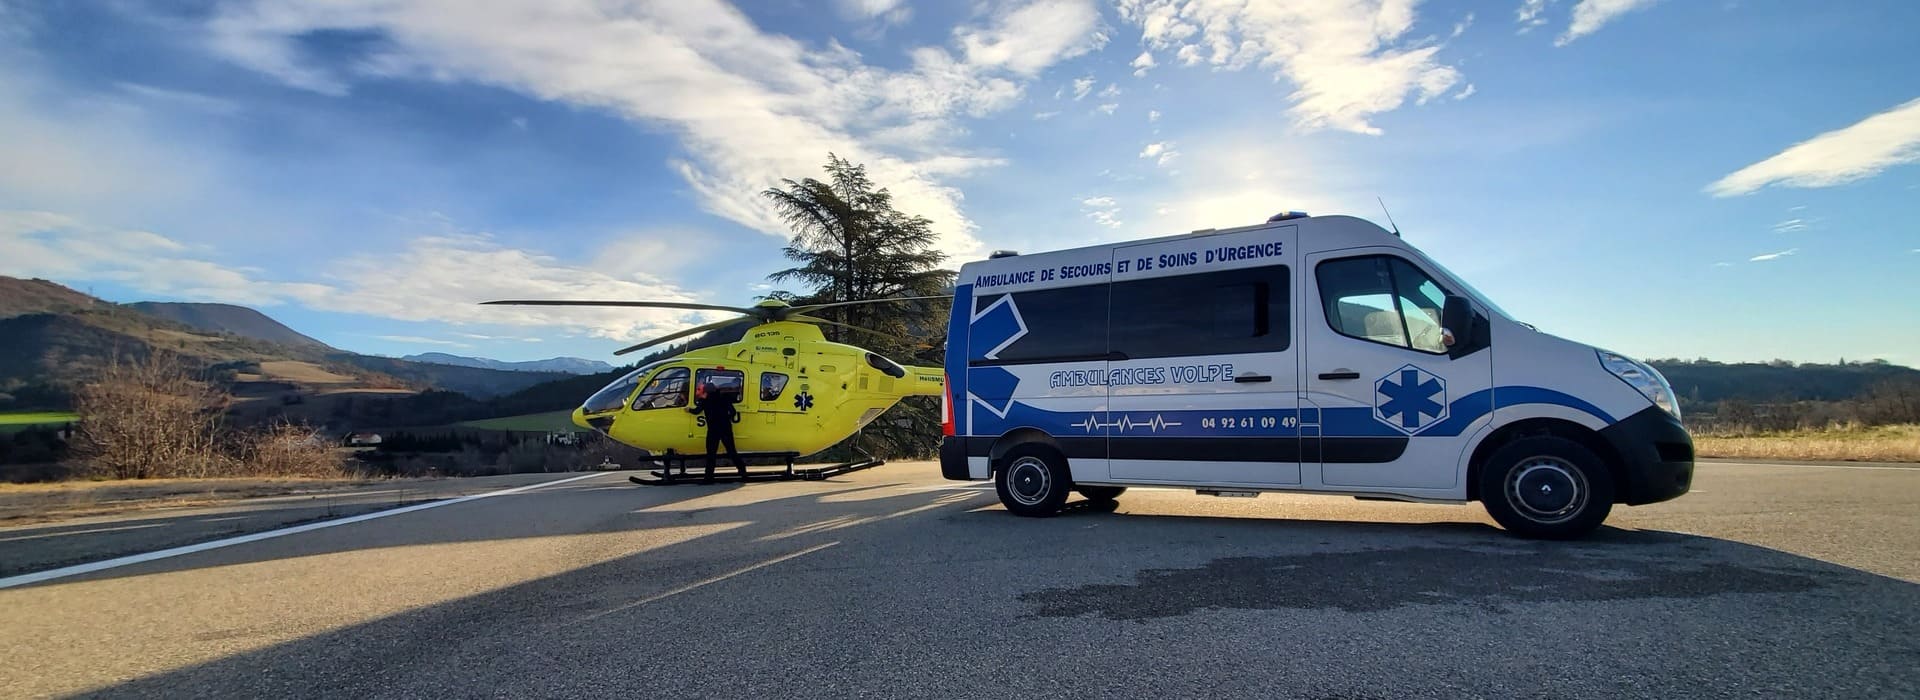 transport ambulance et hélicoptère